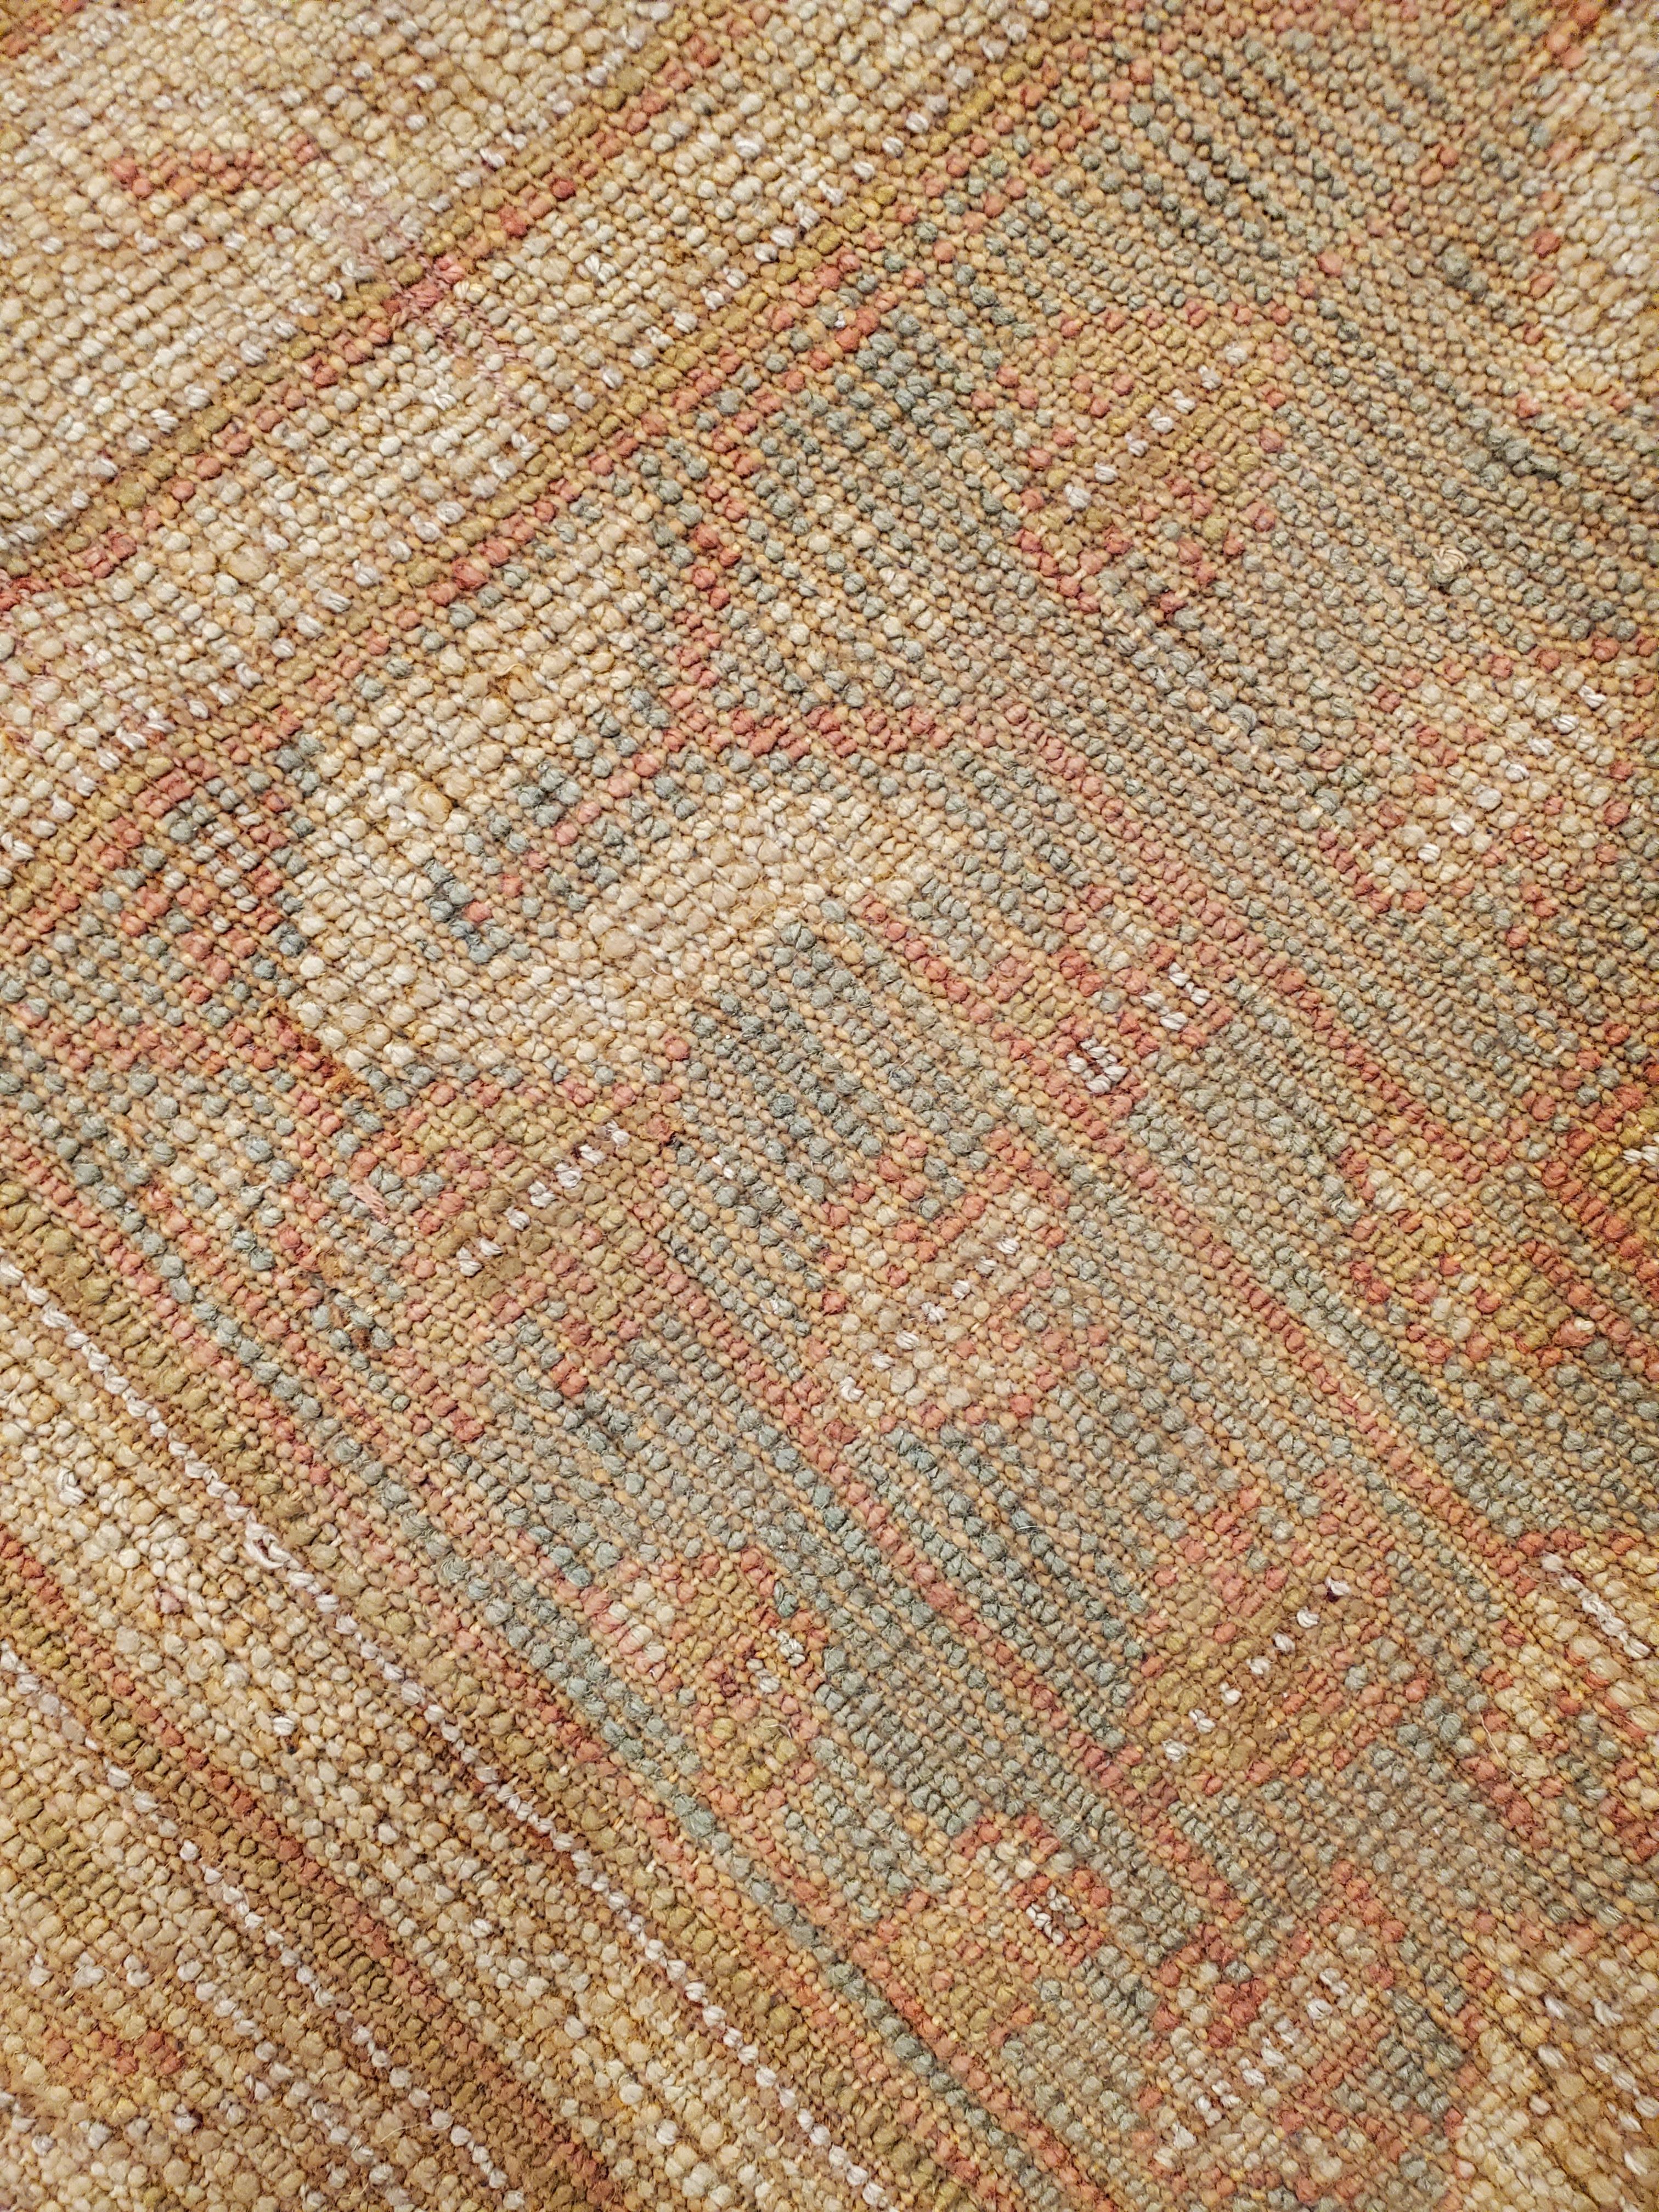 Antique Oushak Carpet, Oriental Rug, Handmade Rug Saffron, Light Blue and Coral For Sale 8